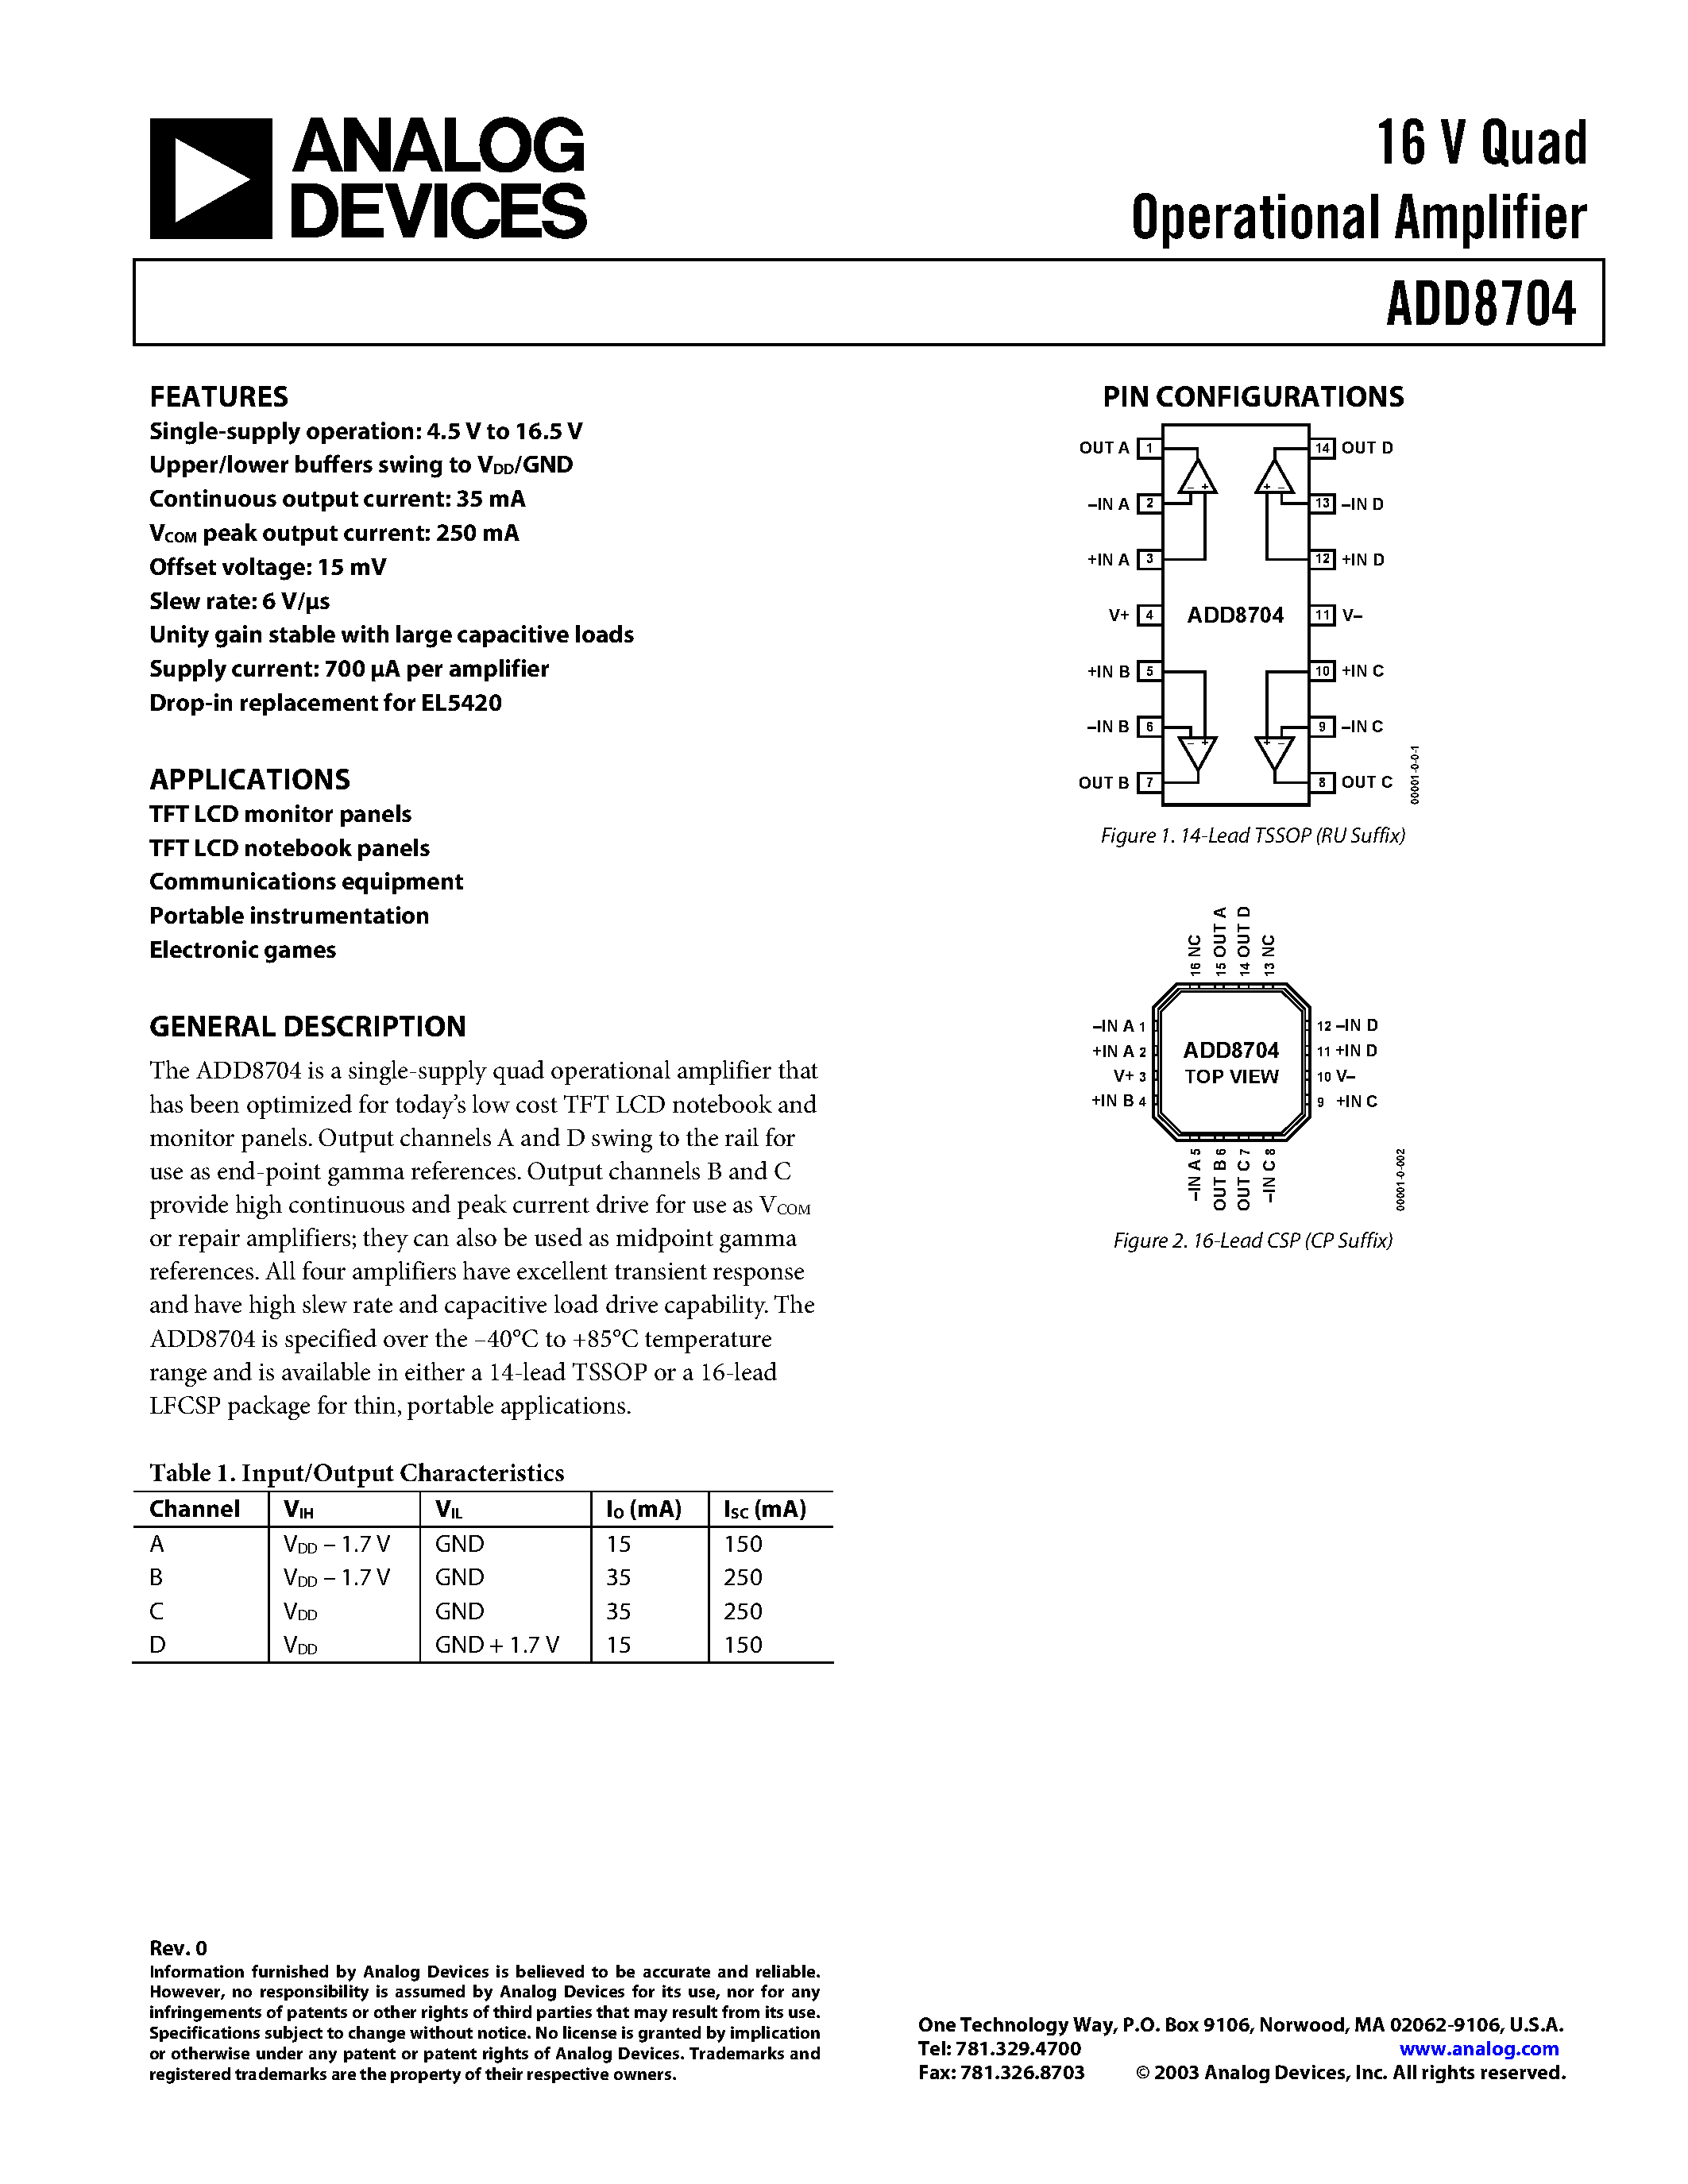 Даташит ADD8704 - 16 V Quad Operational Amplifier страница 1